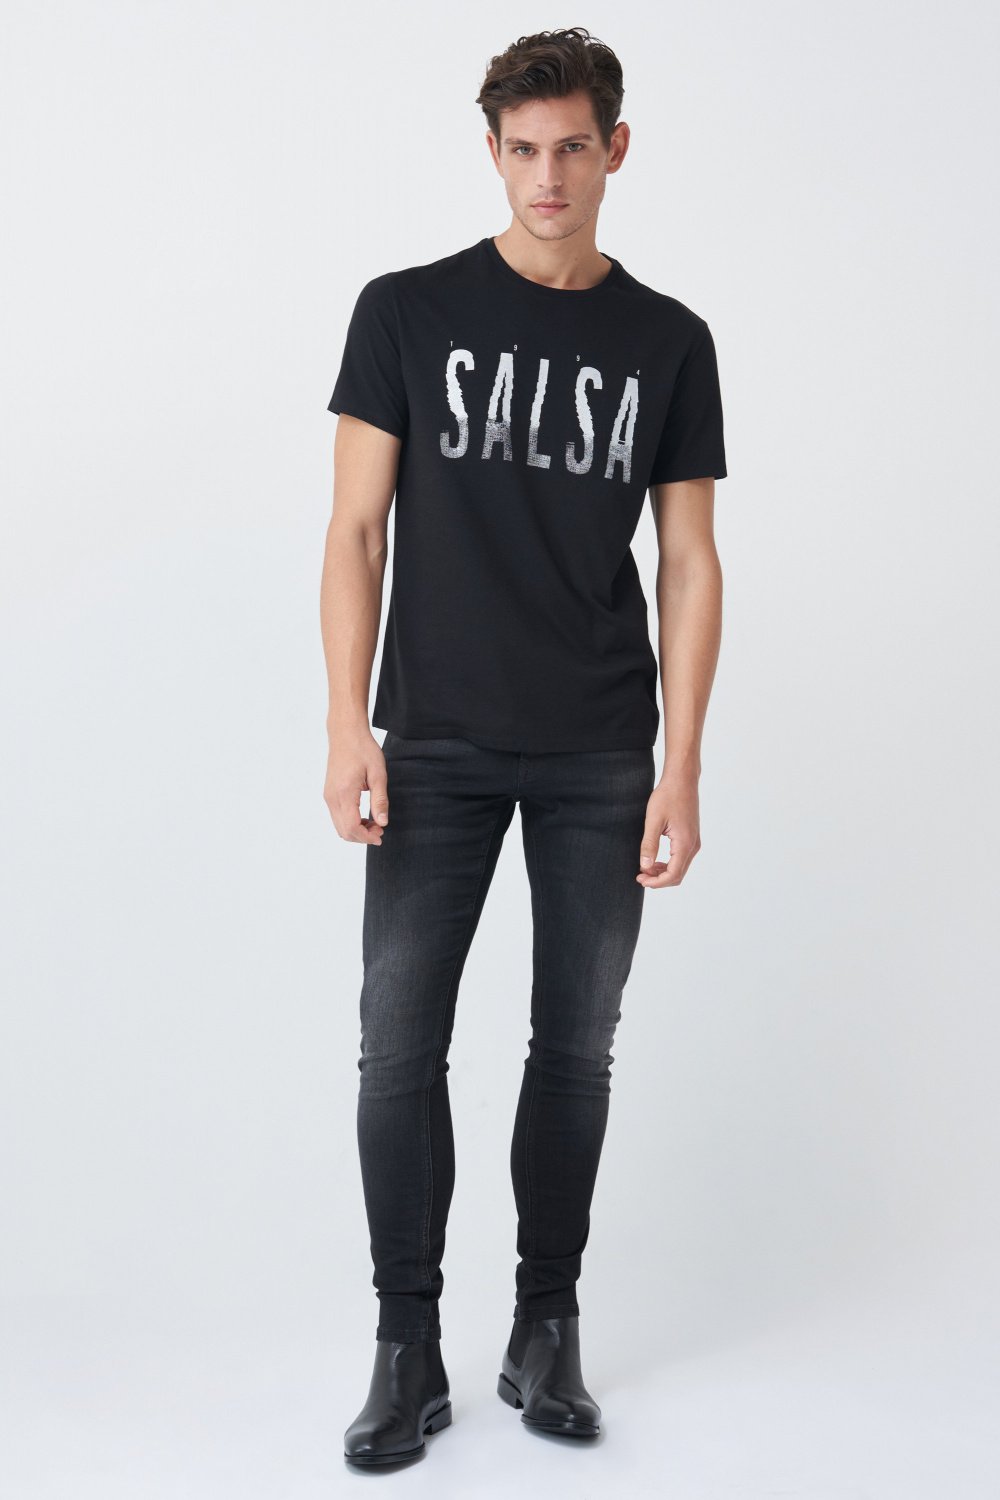 Party metallic branding t-shirt - Salsa